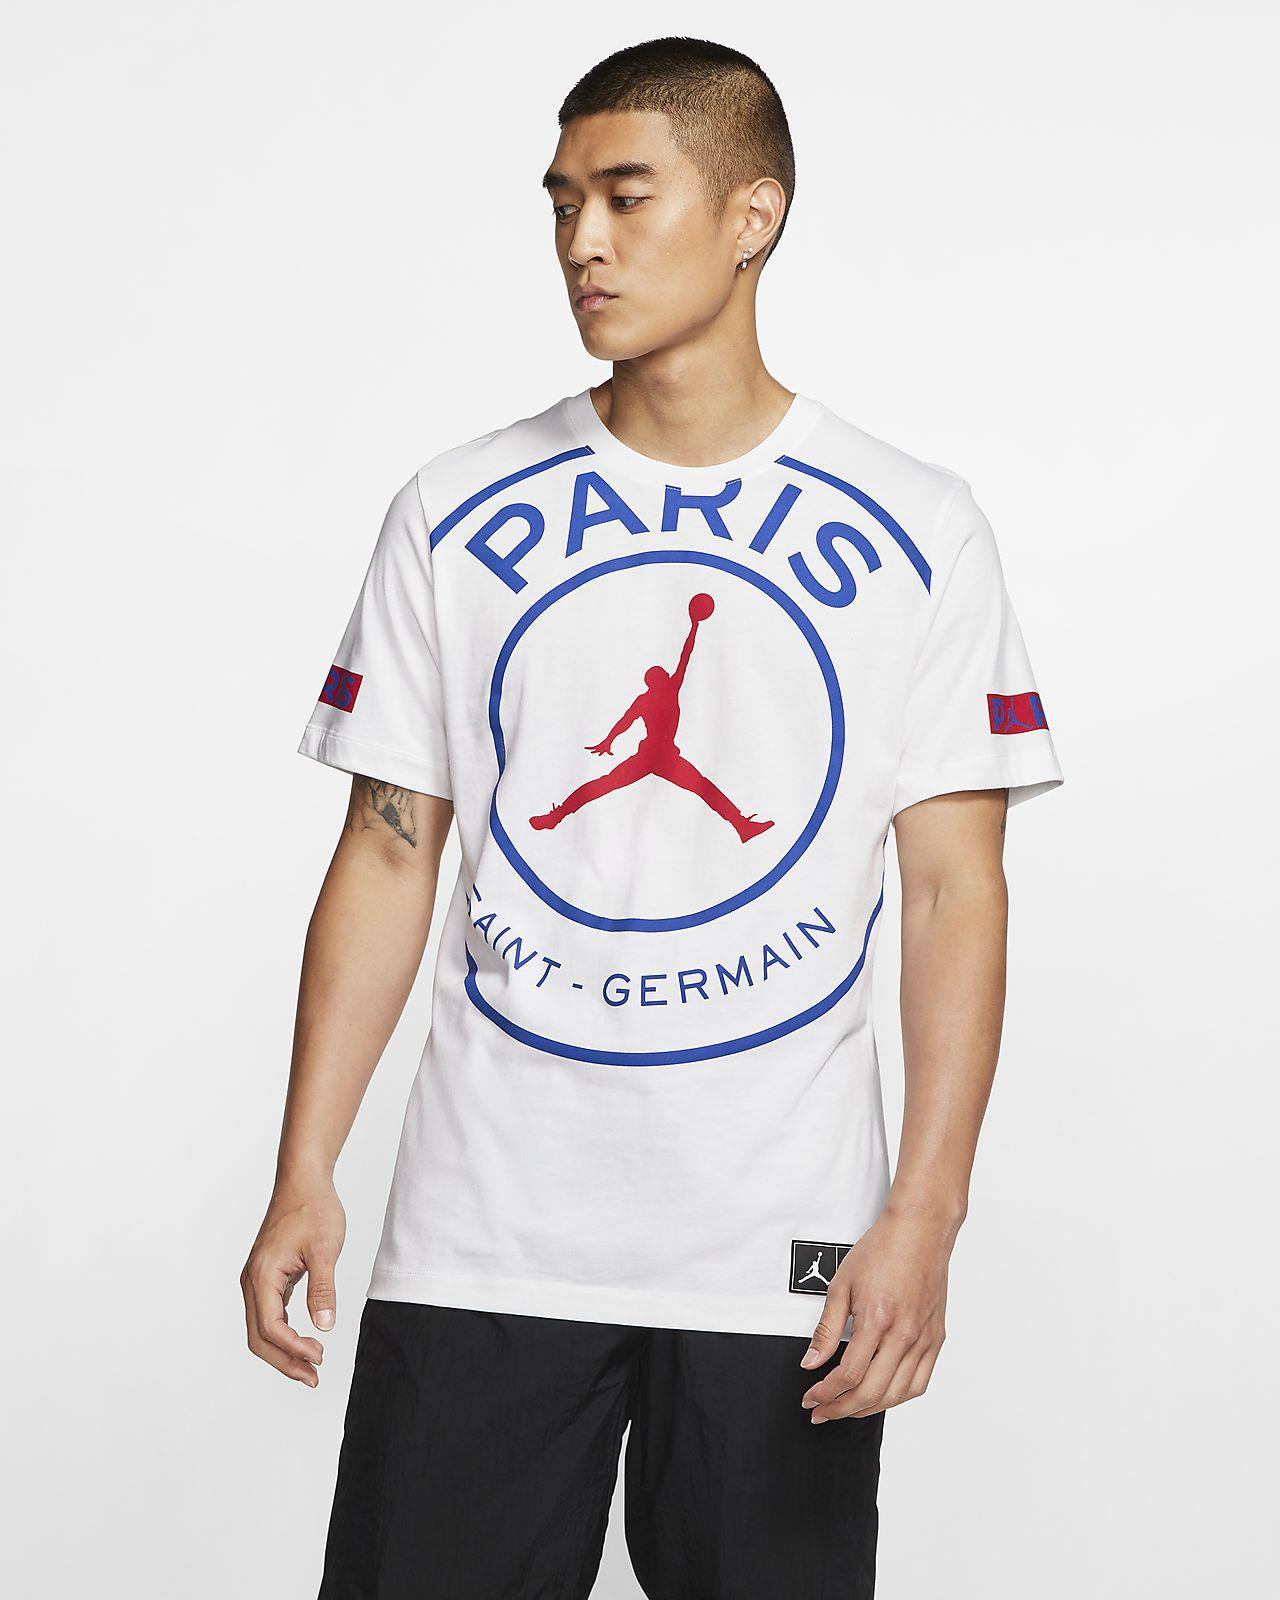 Minhshop.Vn - Hàng Chính Hãng Áo Thun Nike Jordan Paris Saint-Germain White  2020** Zzz